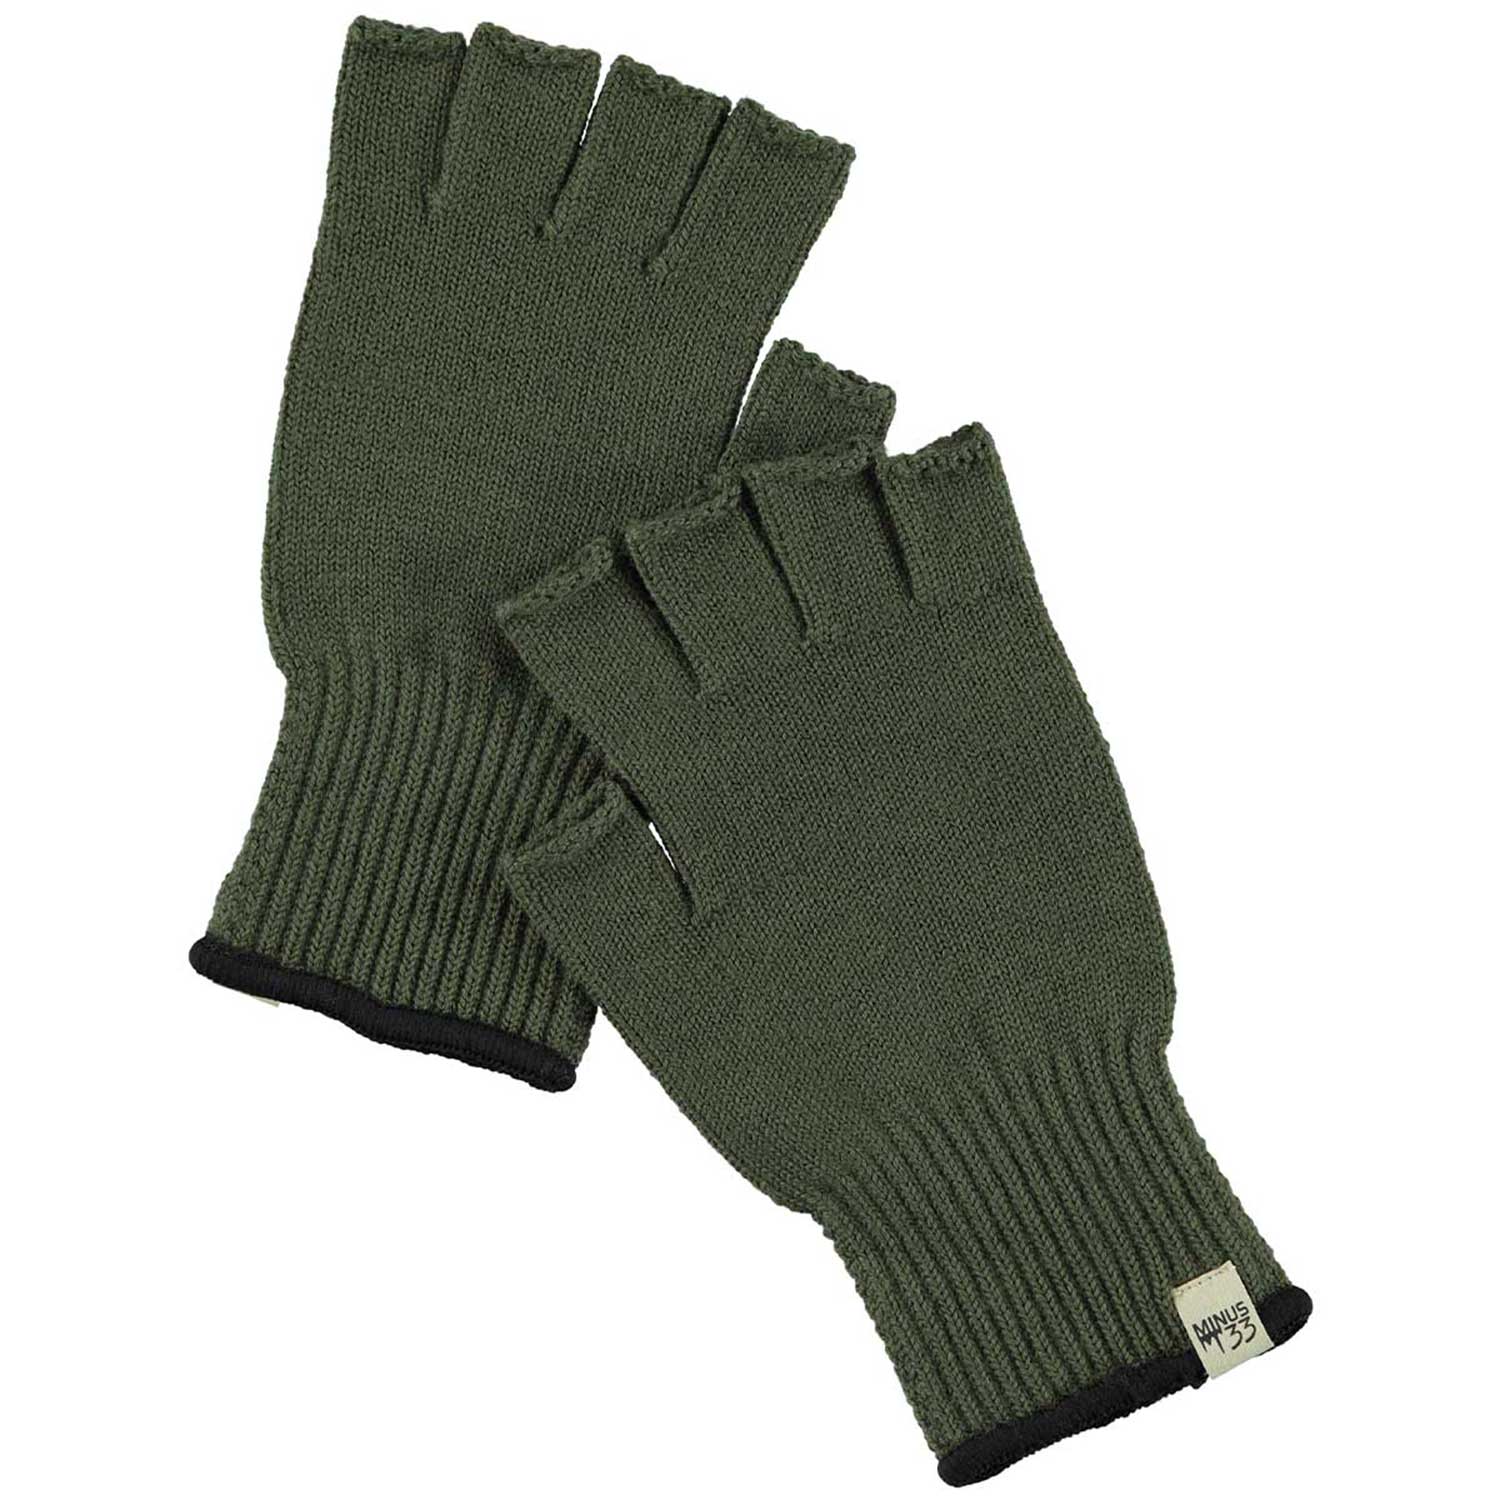 Minus 33 Fingerless Glove Liner